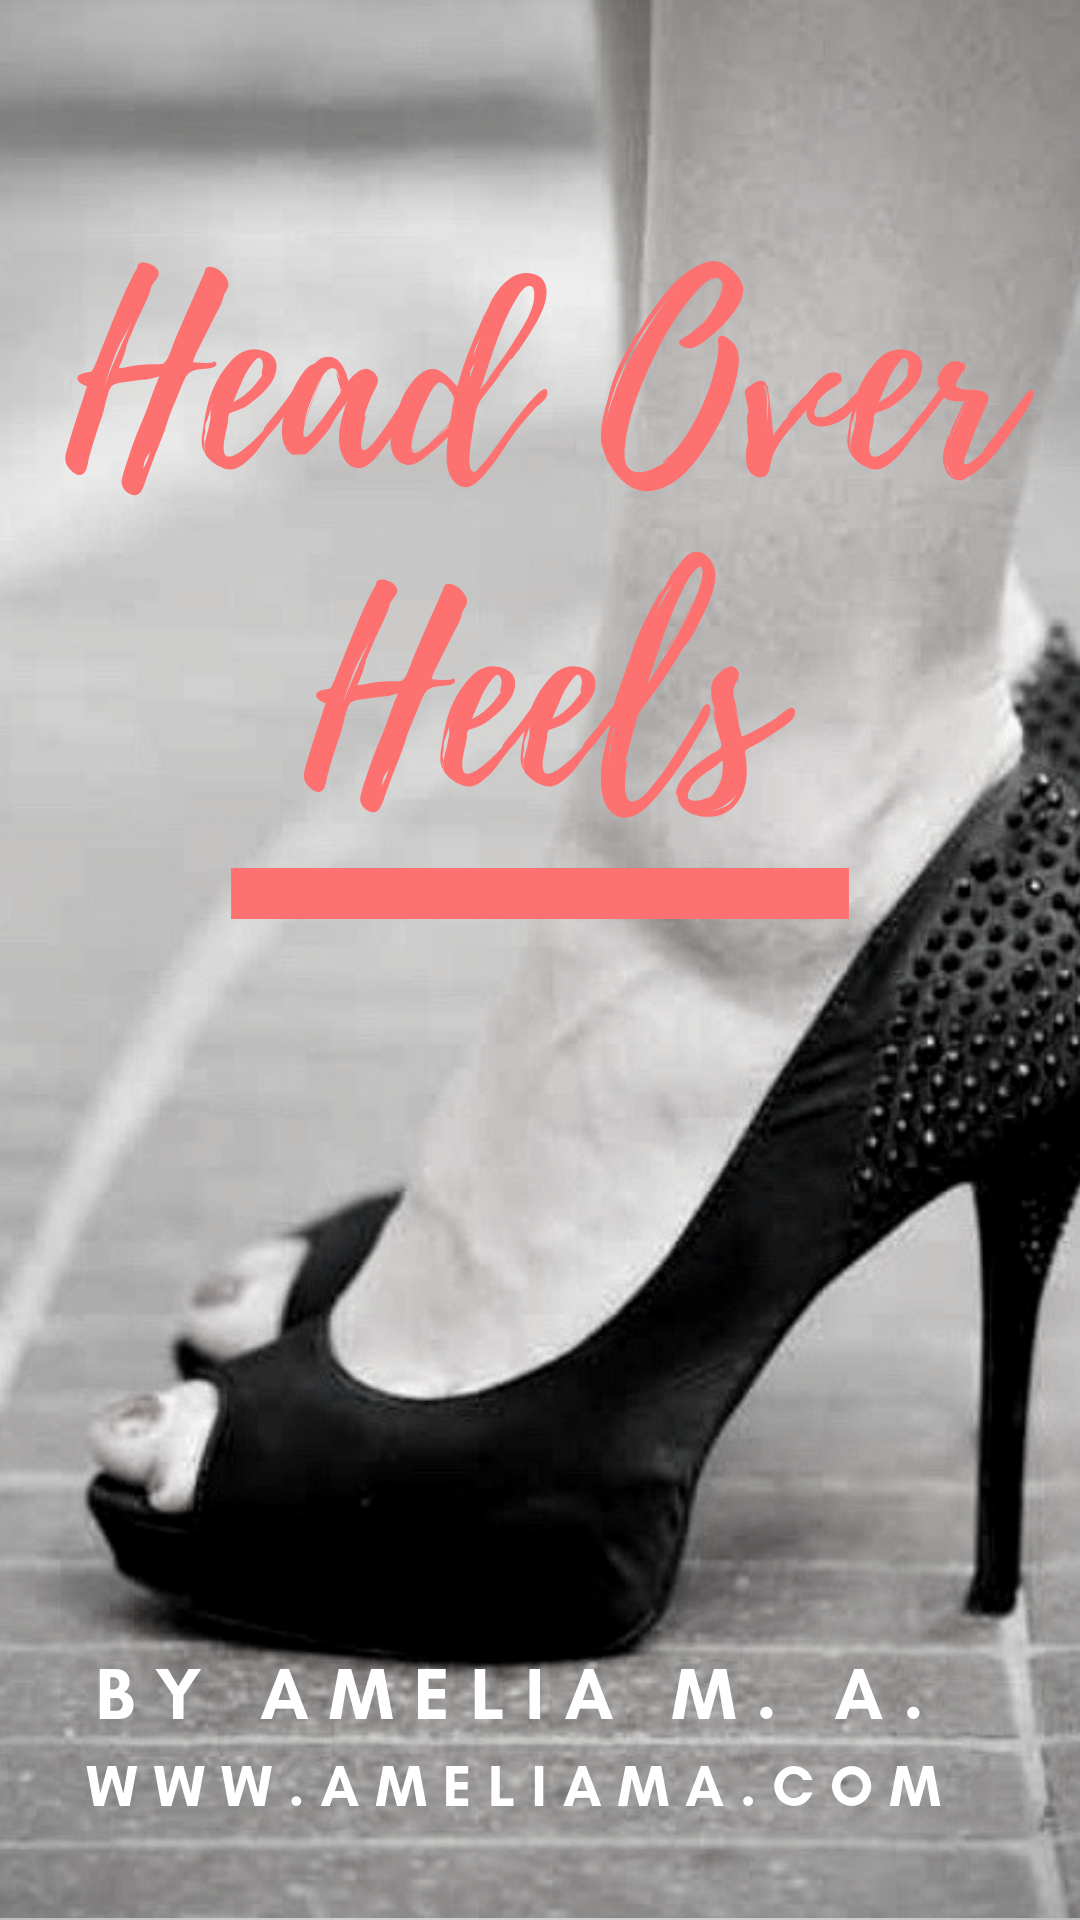 Head Over Heels | Broadway Direct